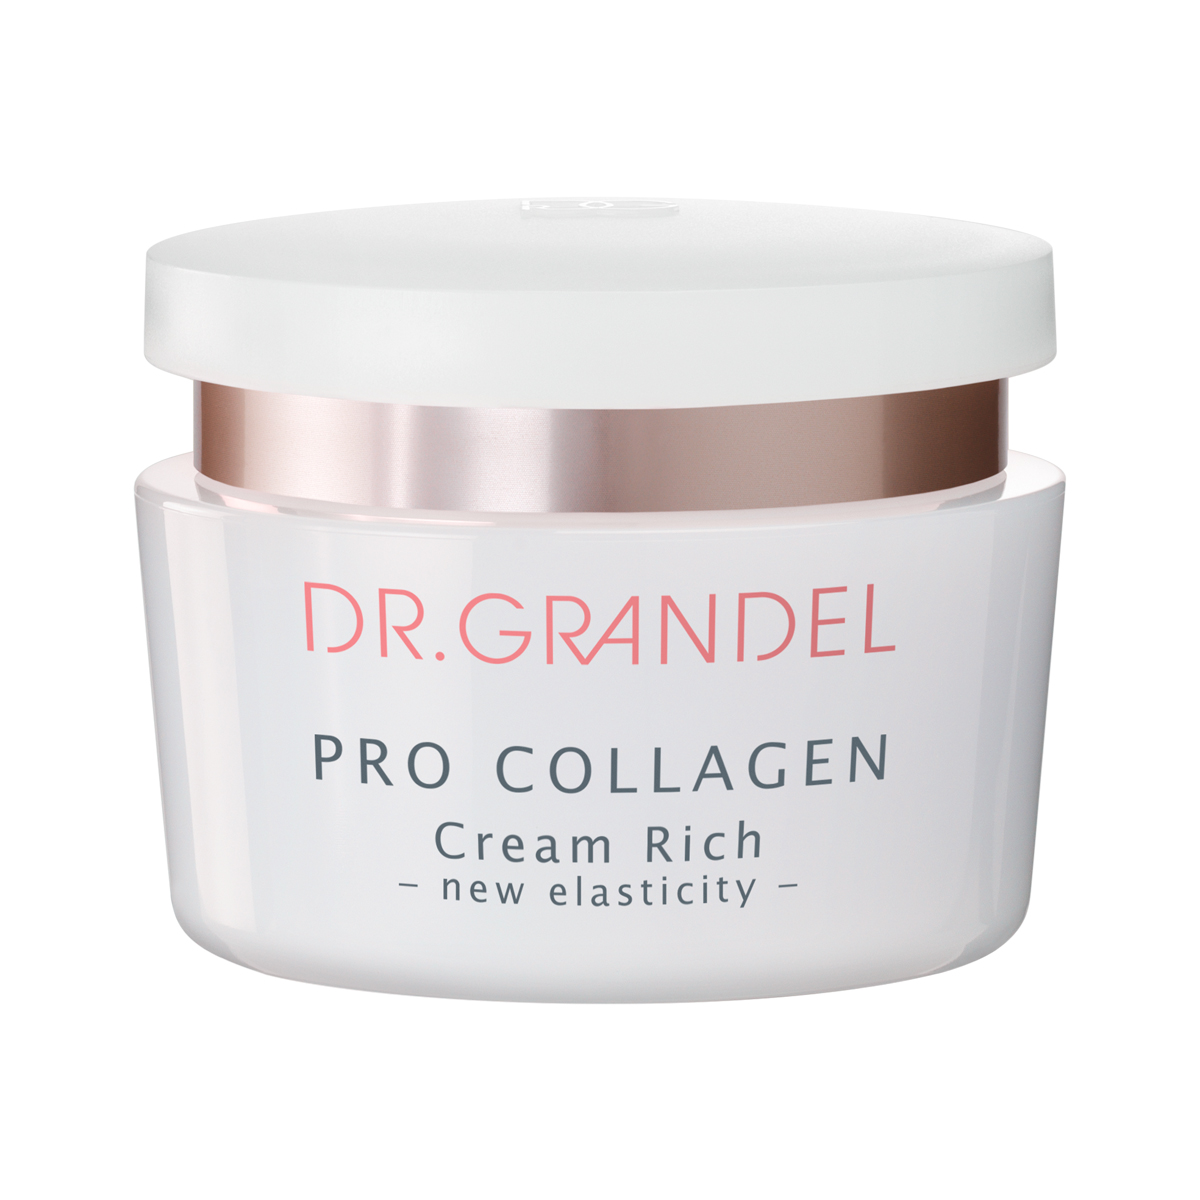 Dr. Grandel Pro Collagen Cream Rich 50 ml